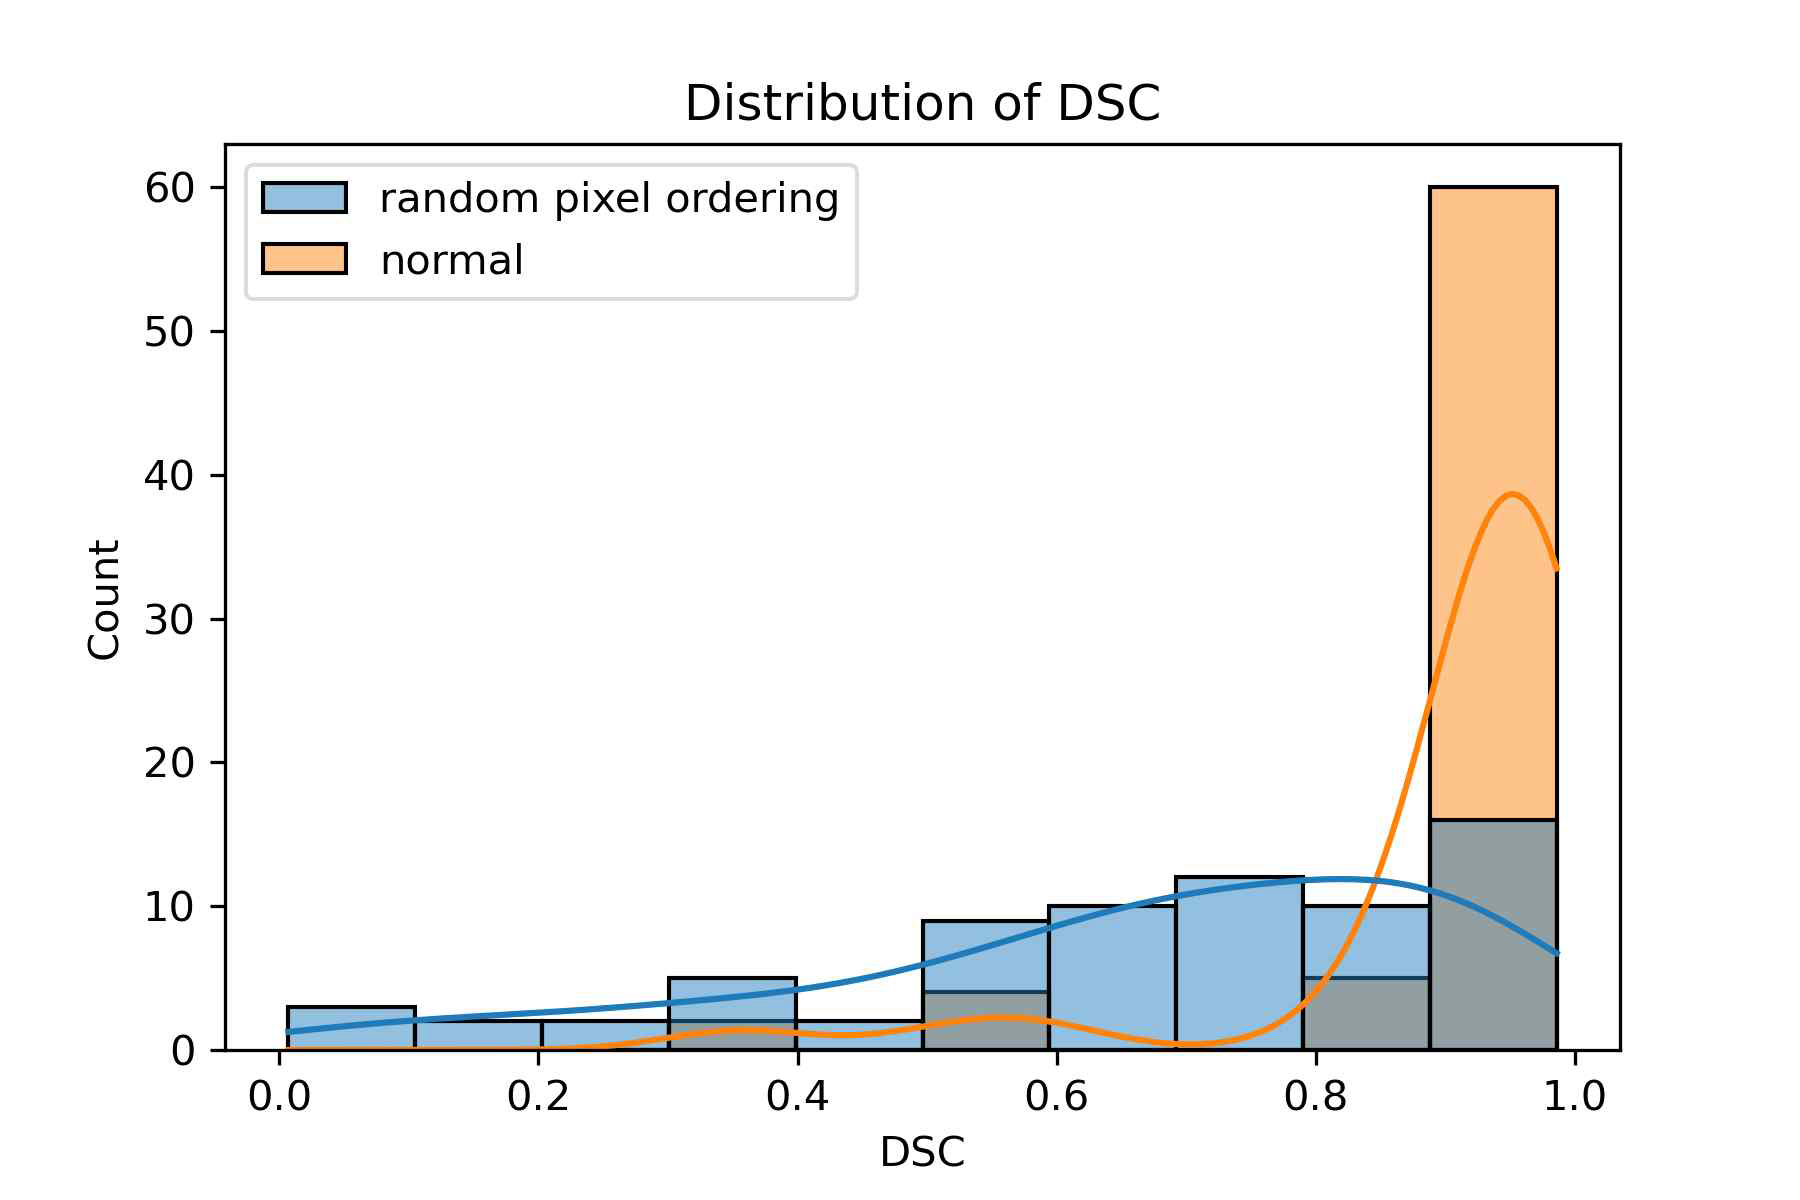 랜덤 이미지 (image with random pixel ordering)와 실제 입력 이미지 (input image)로 학습한 두 모델의 테스트 데이터셋 (test set)에서의 다이스 유사계수 (DSC)의 분포 비교